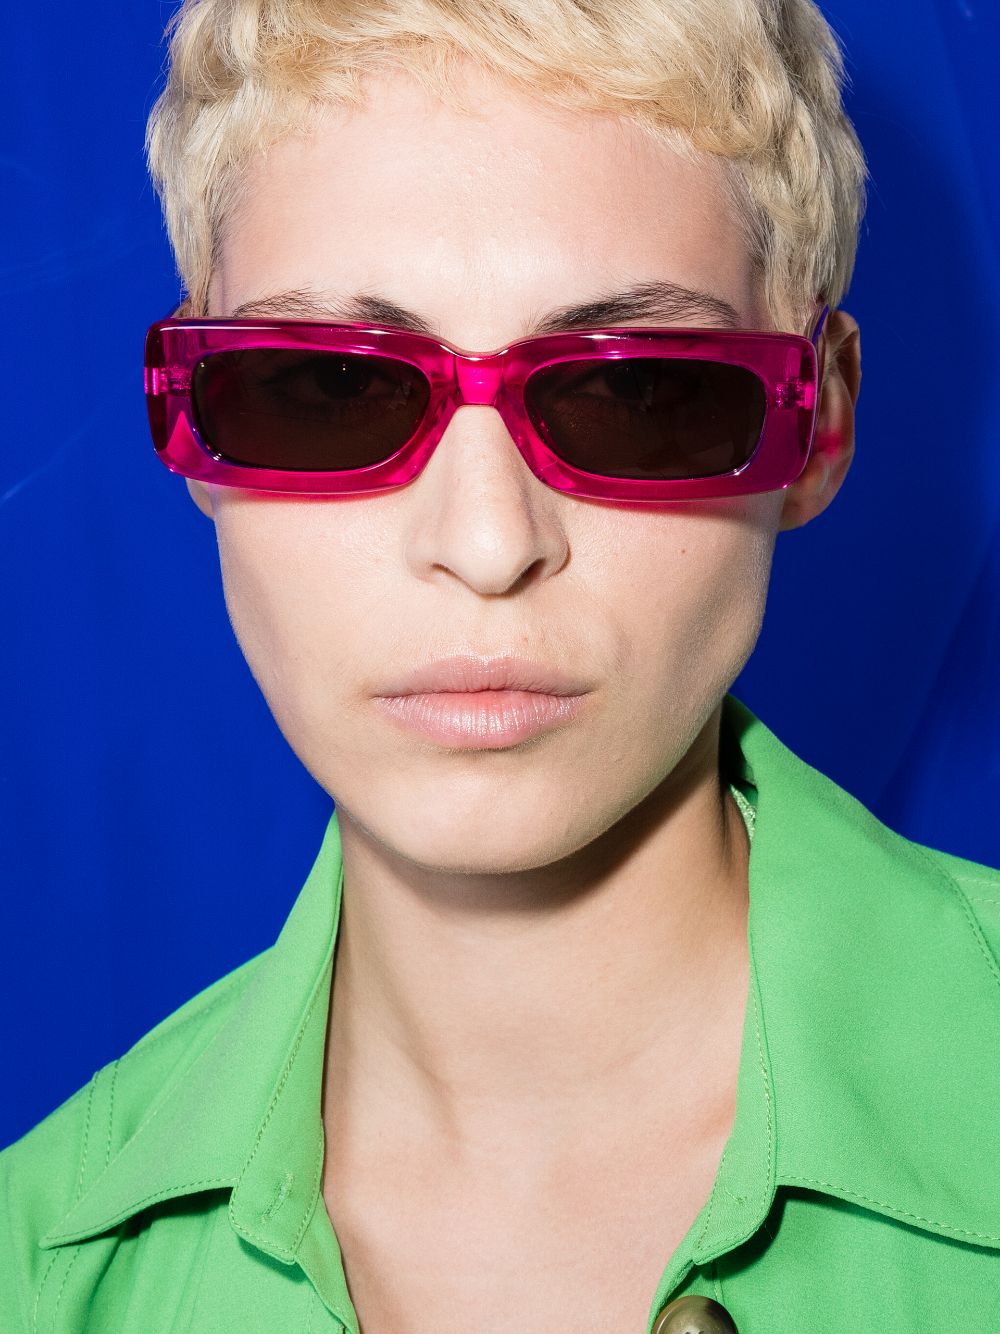 Linda Farrow x Attico Mini Marfa Sunglasses